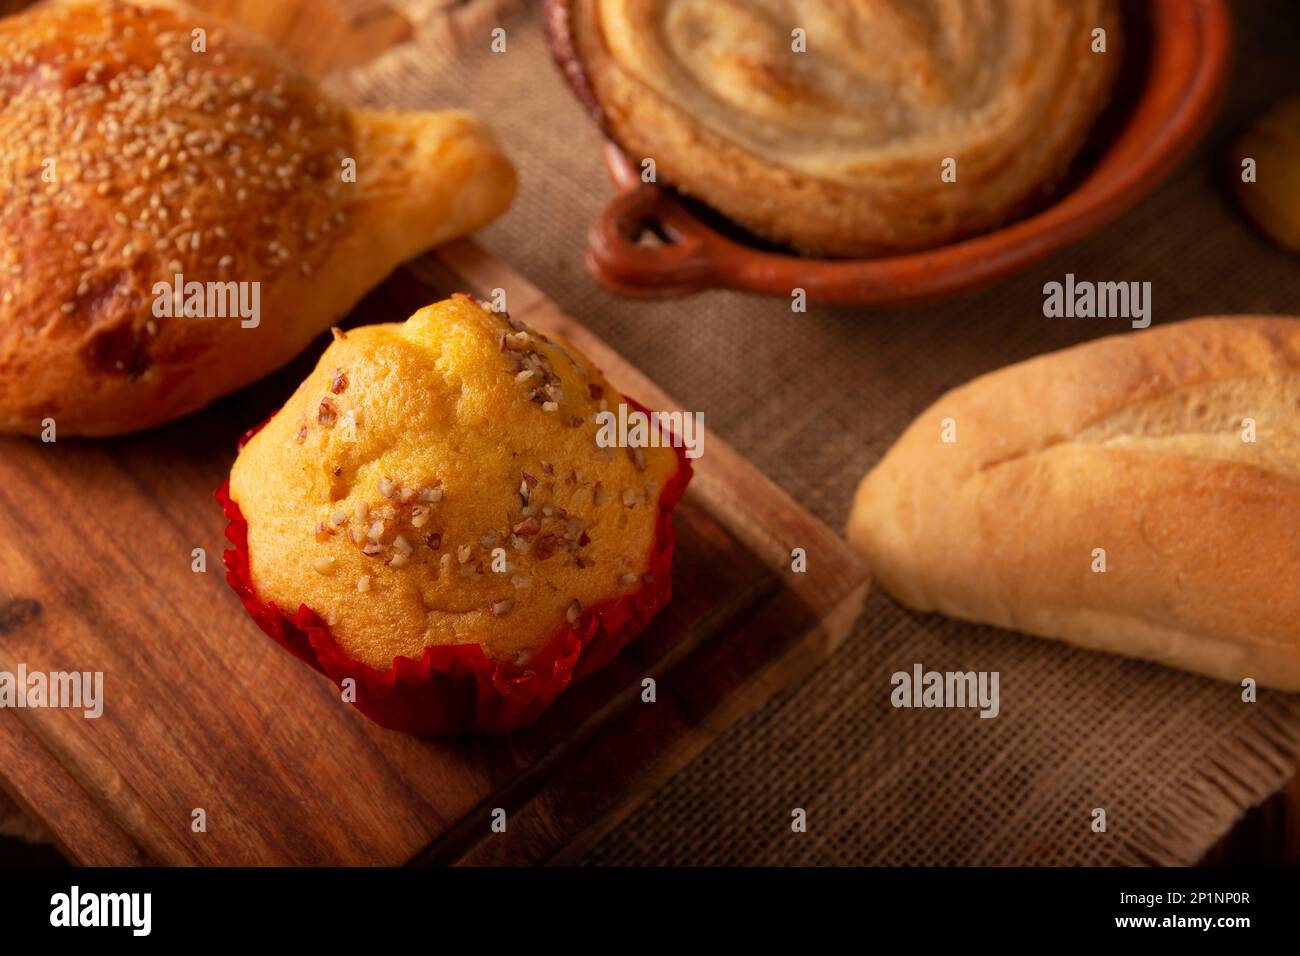 Panque Chino de Nuez. È un pane dolce simile ad un muffin o Mantecada coperto di noci, è uno dei tipici pani dolci messicani, molto popu Foto Stock